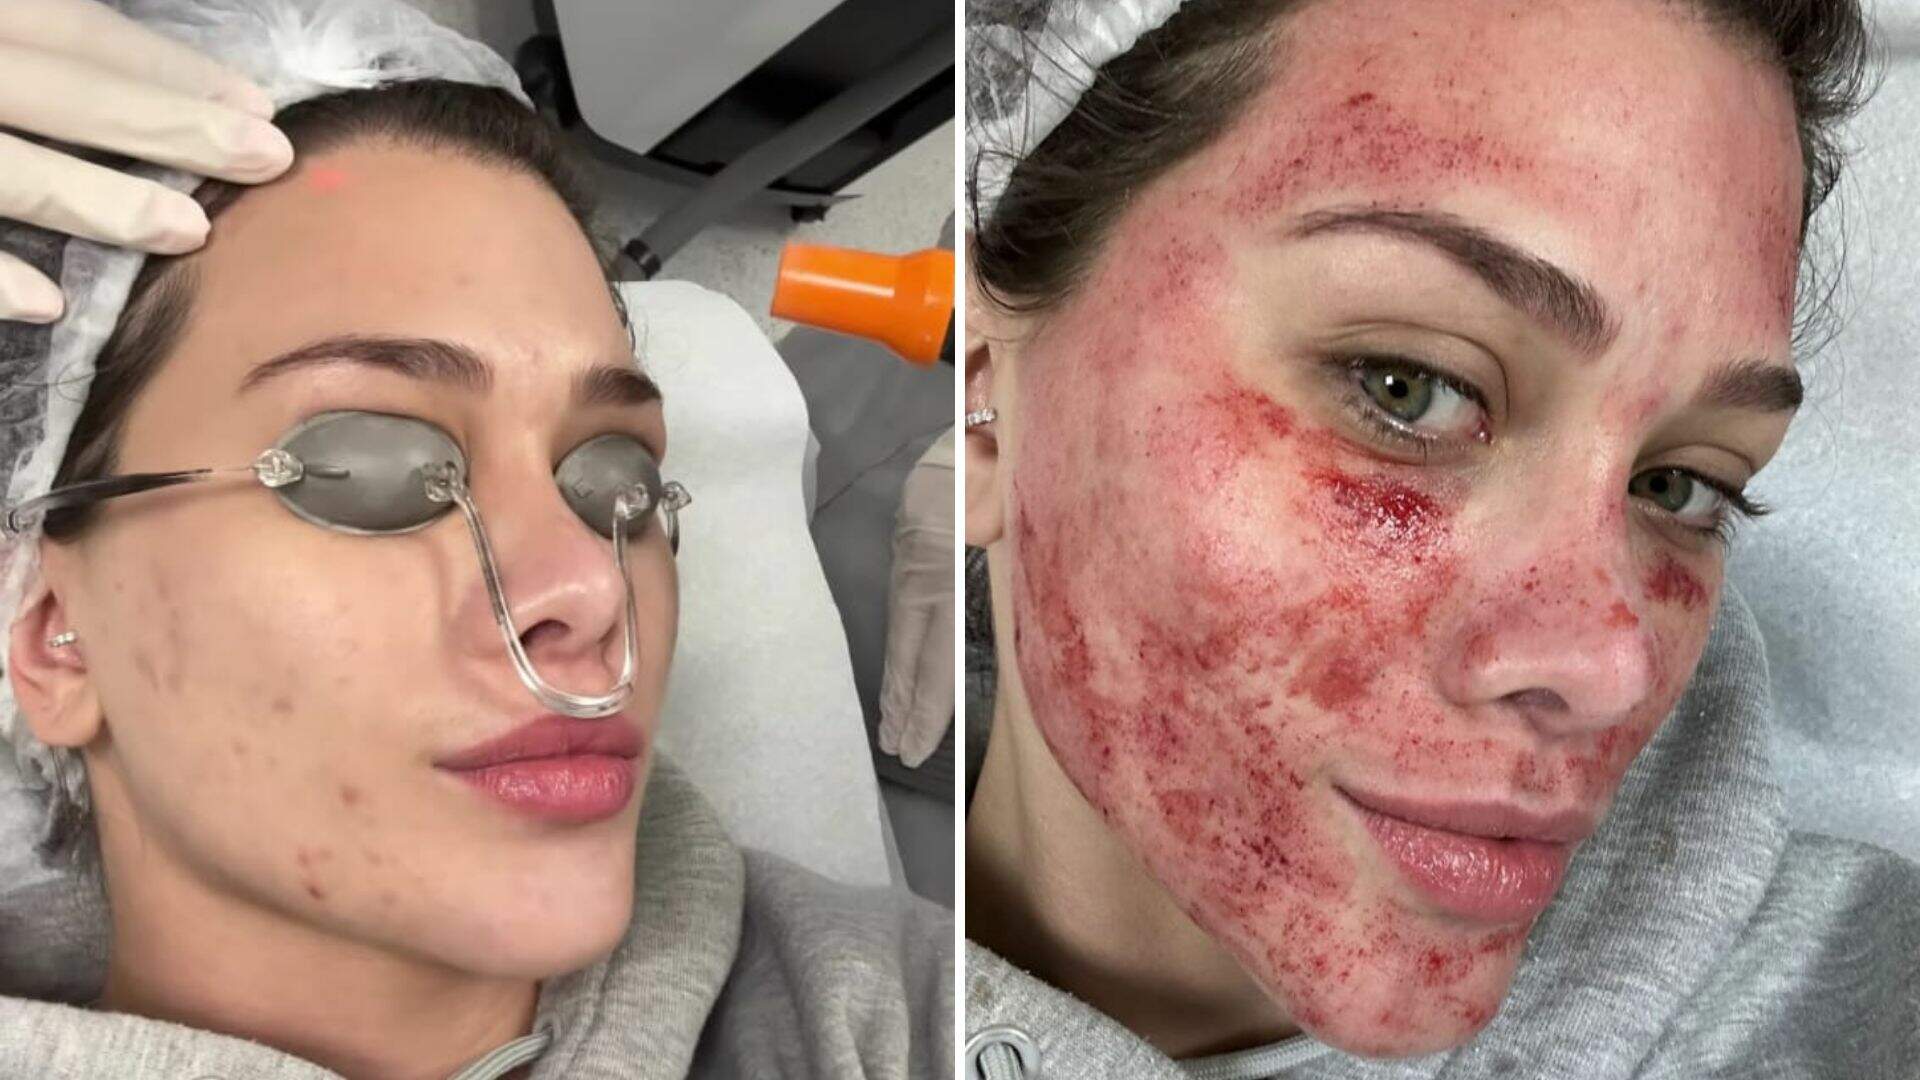 Flavia Pavanelli aparece com rosto sangrando após procedimento e choca internautas - Metropolitana FM